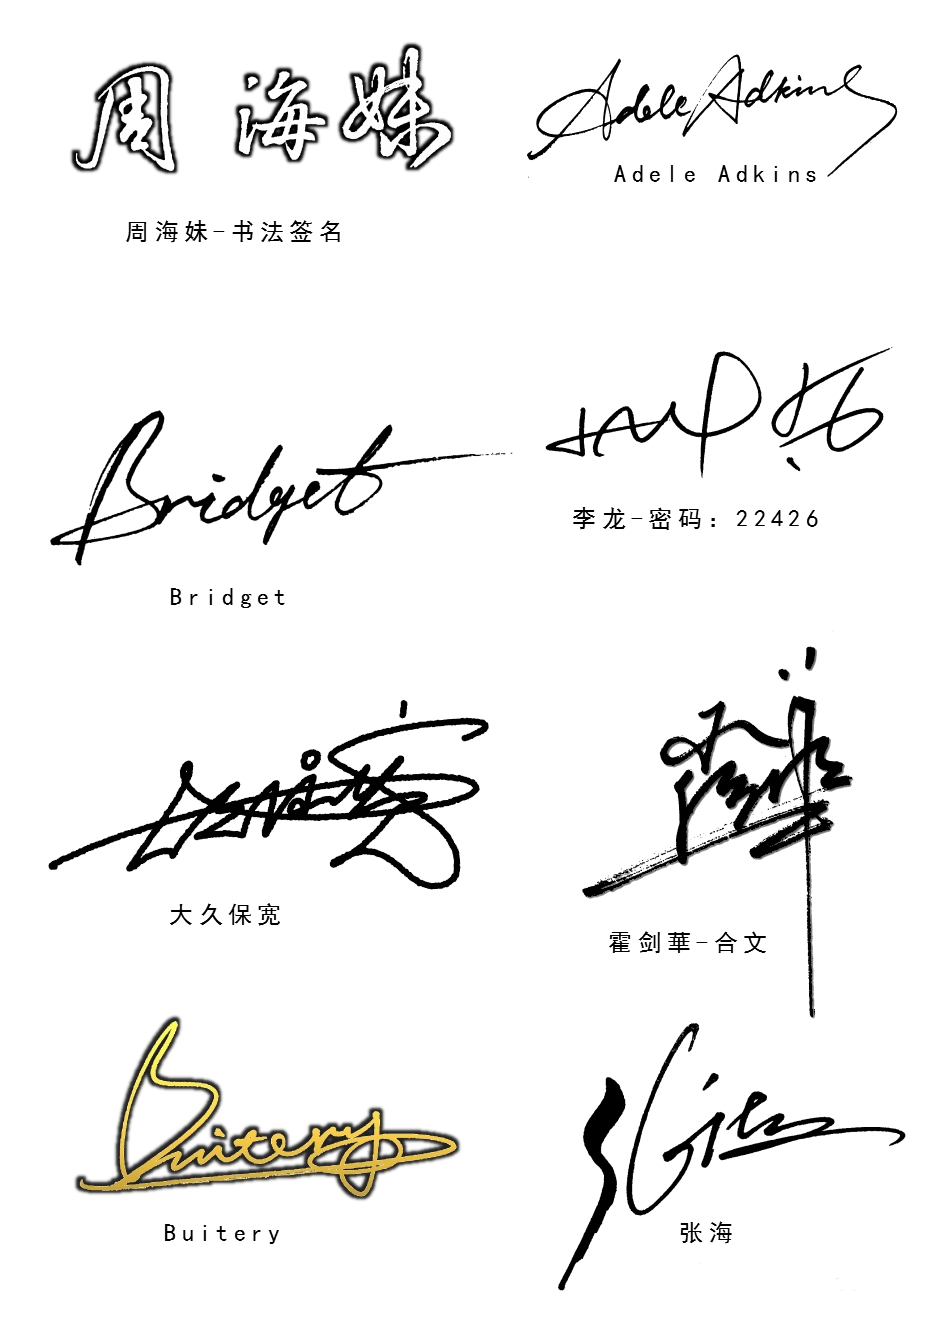 南京孙老师艺术签名签名设计作品欣赏丨艺术签名设计